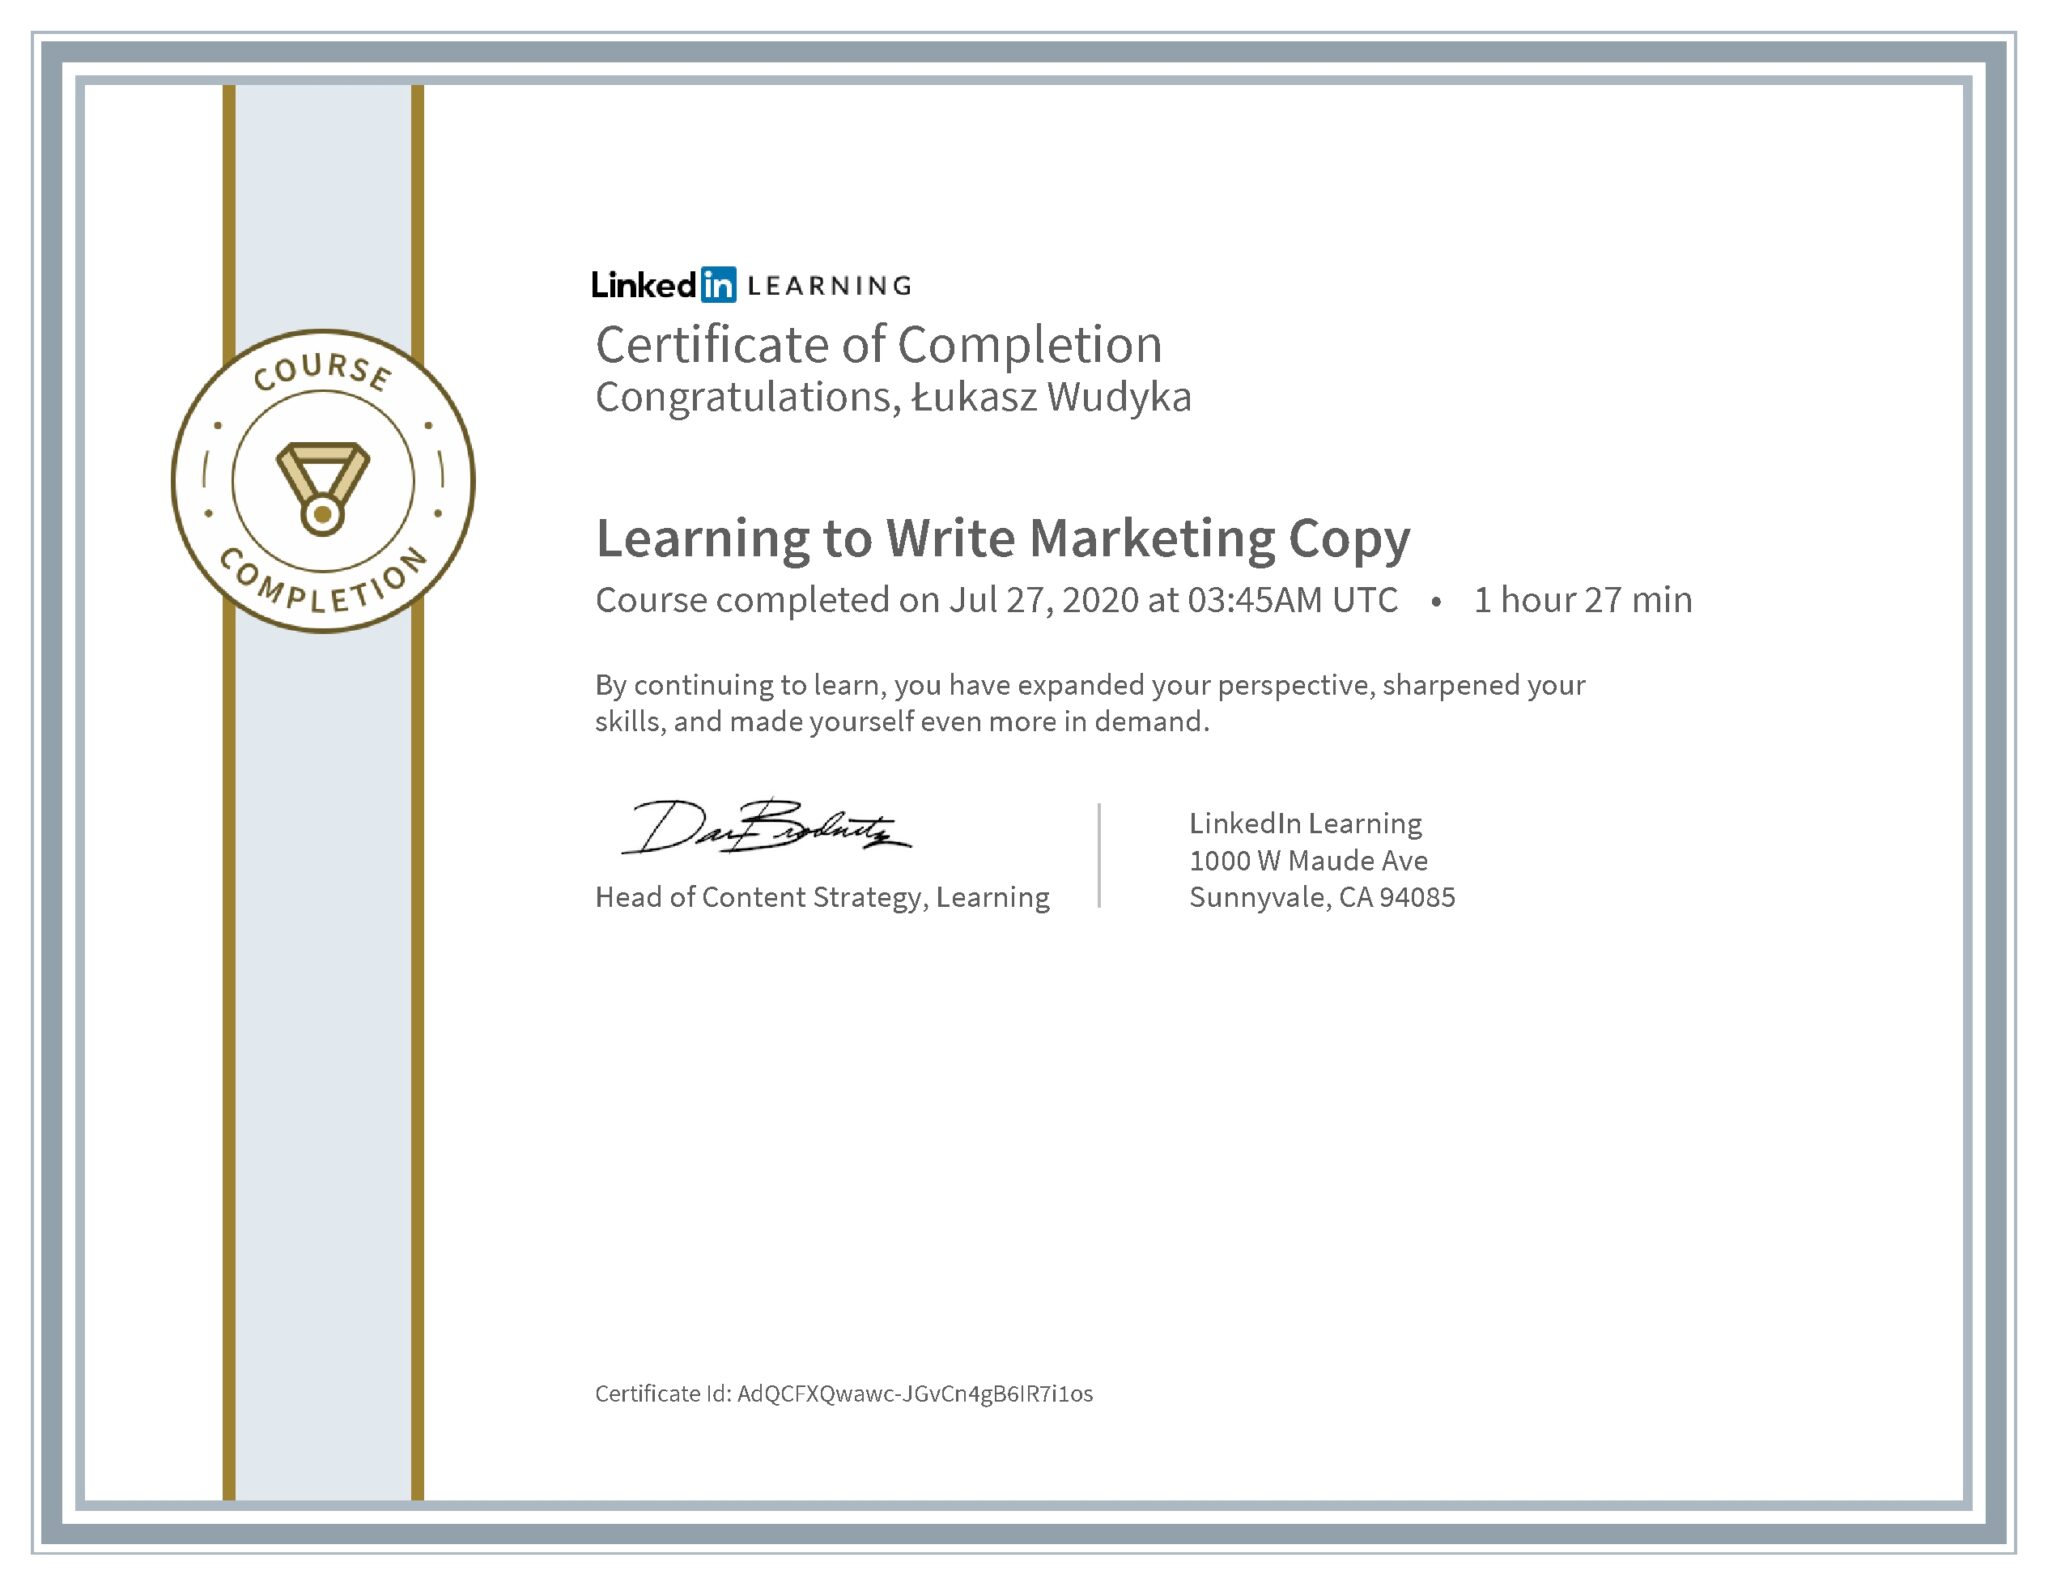 Łukasz Wudyka certyfikat LinkedIn Learning to Write Marketing Copy